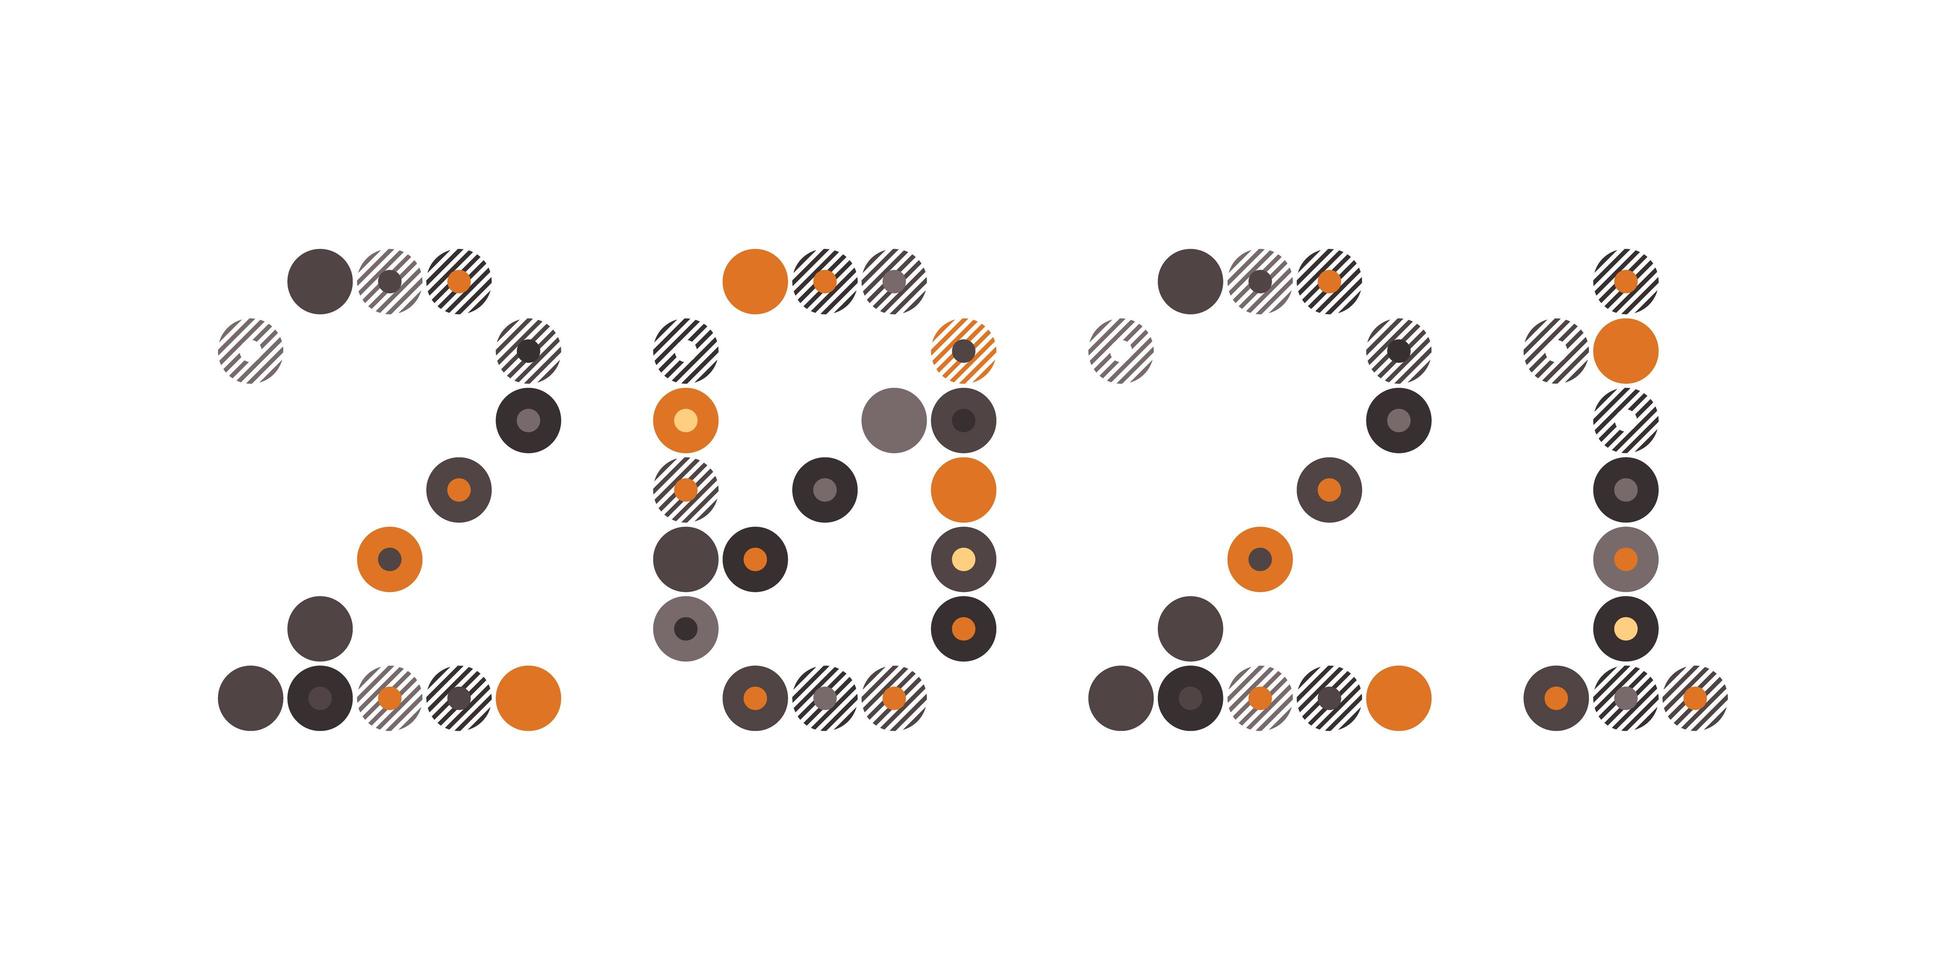 felice anno nuovo 2021 vettore cerchio pixel art tipografia. illustrazione della cartolina d'auguri di vacanze. lettere da strisce, cerchi e punti. poster geometrici del nuovo anno come il tabellone segnapunti elettronico.